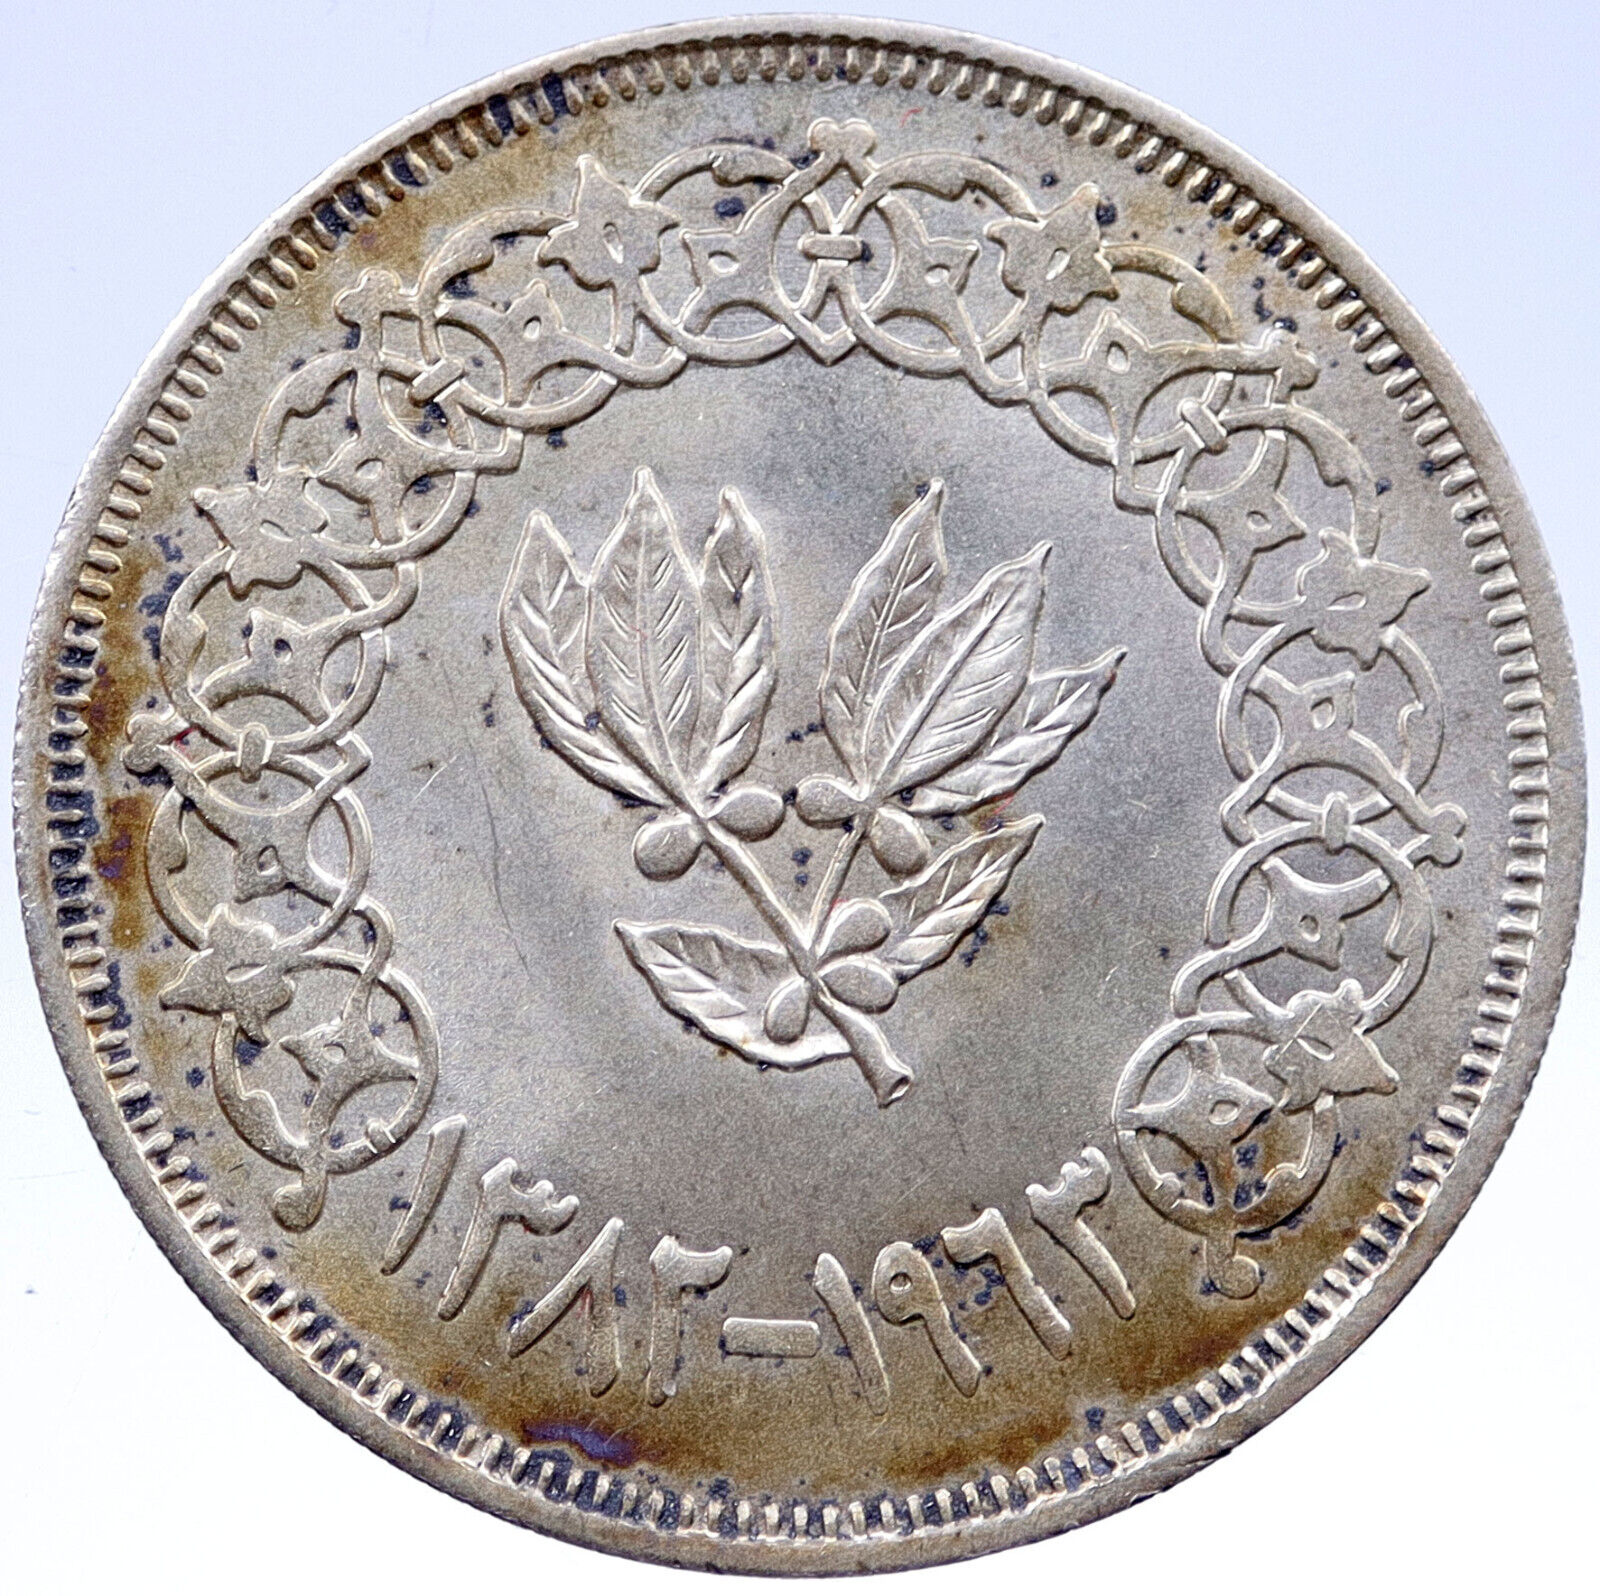 1963 YEMEN Silver 1 Riyal Arab Republic Antique Vintage ISLAMIC Coin i119414